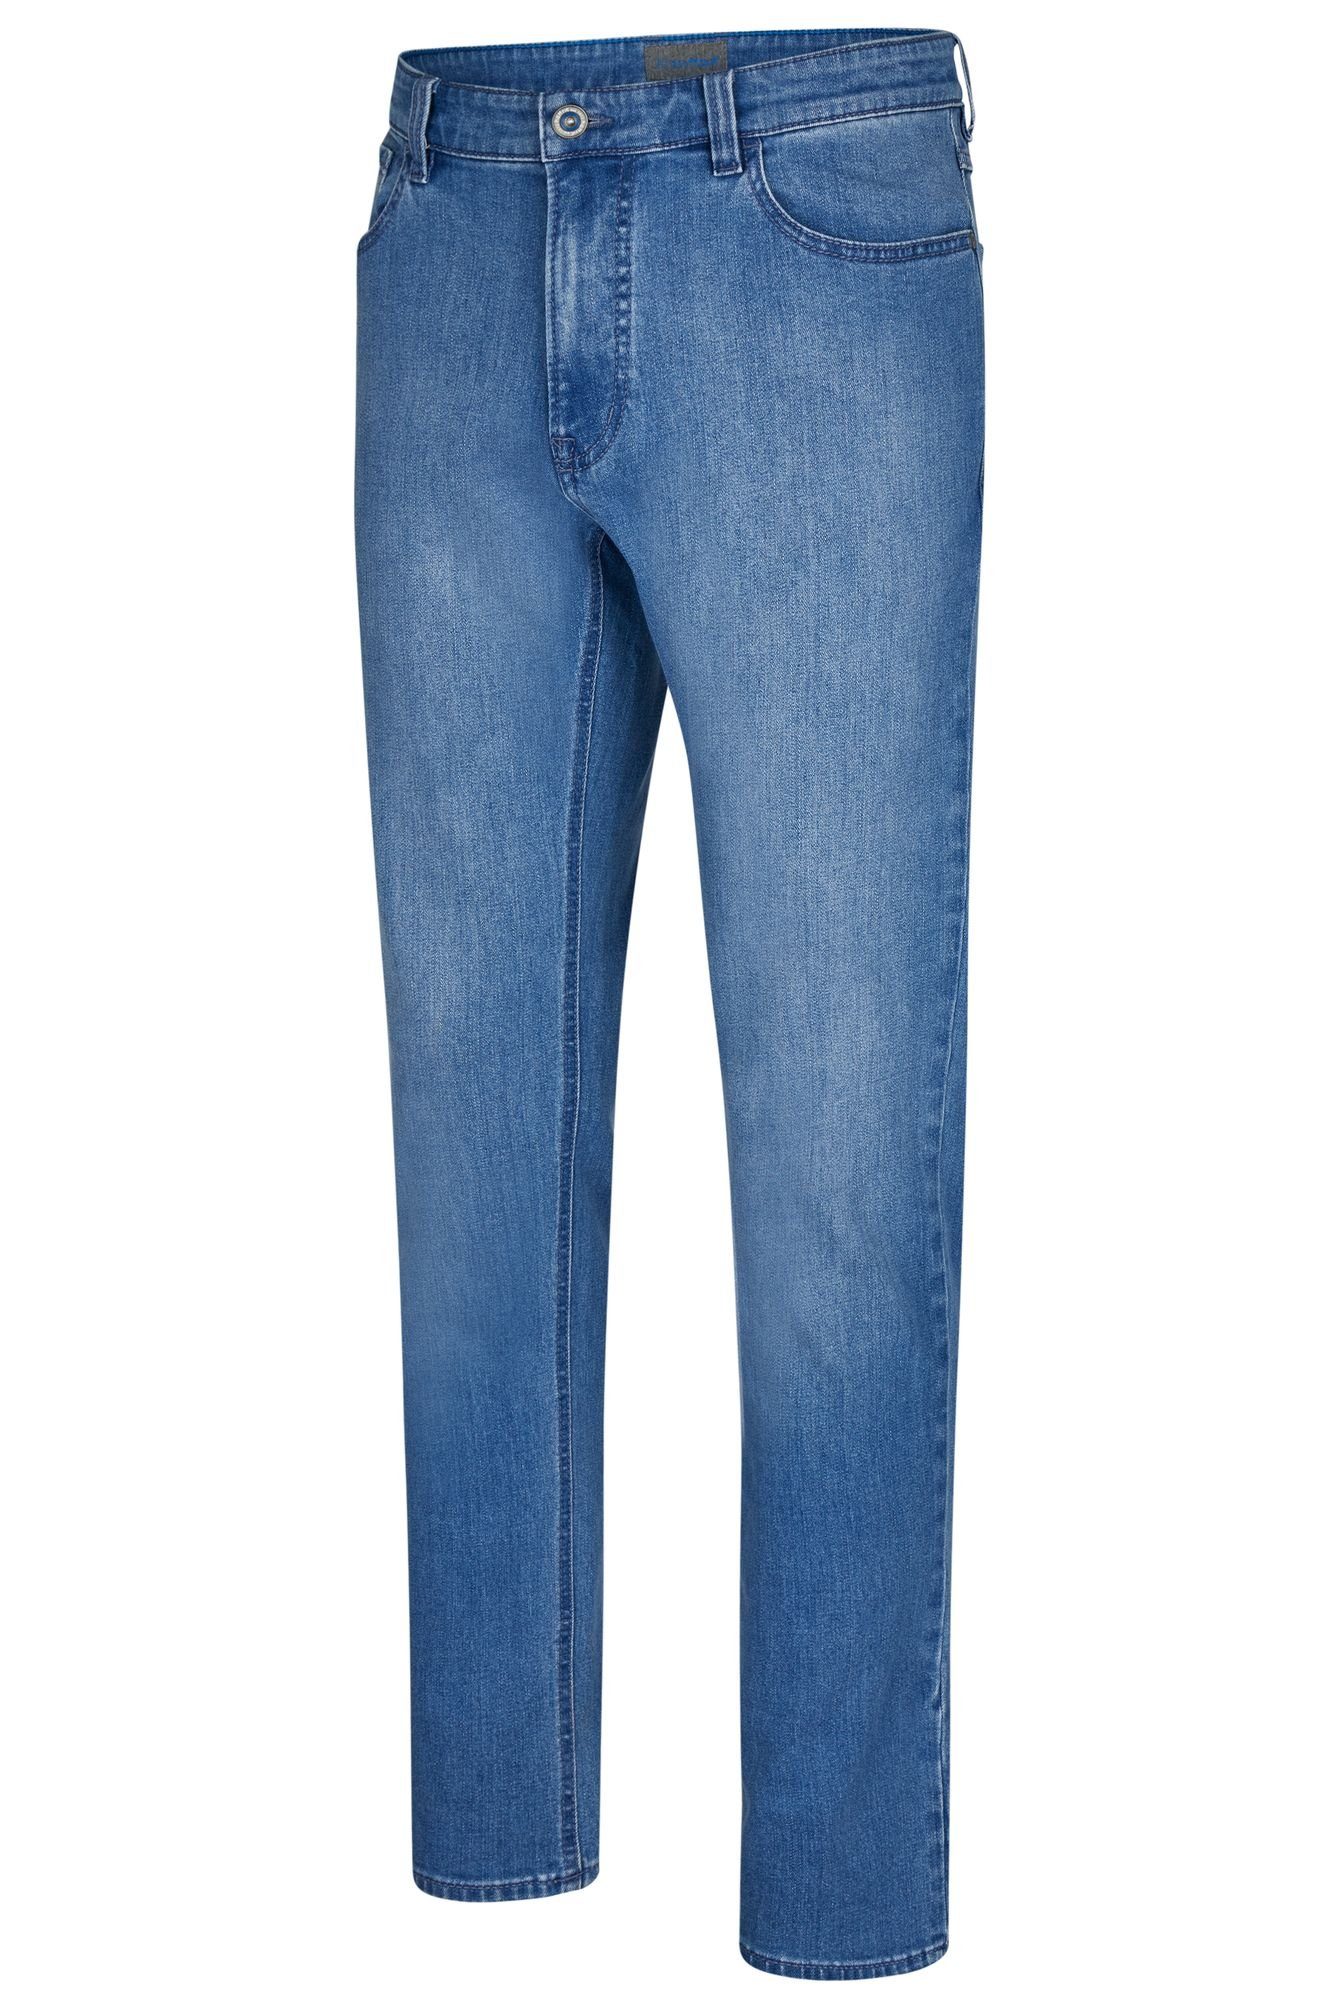 (44) 688865-9273 5-Pocket-Jeans blau Hattric